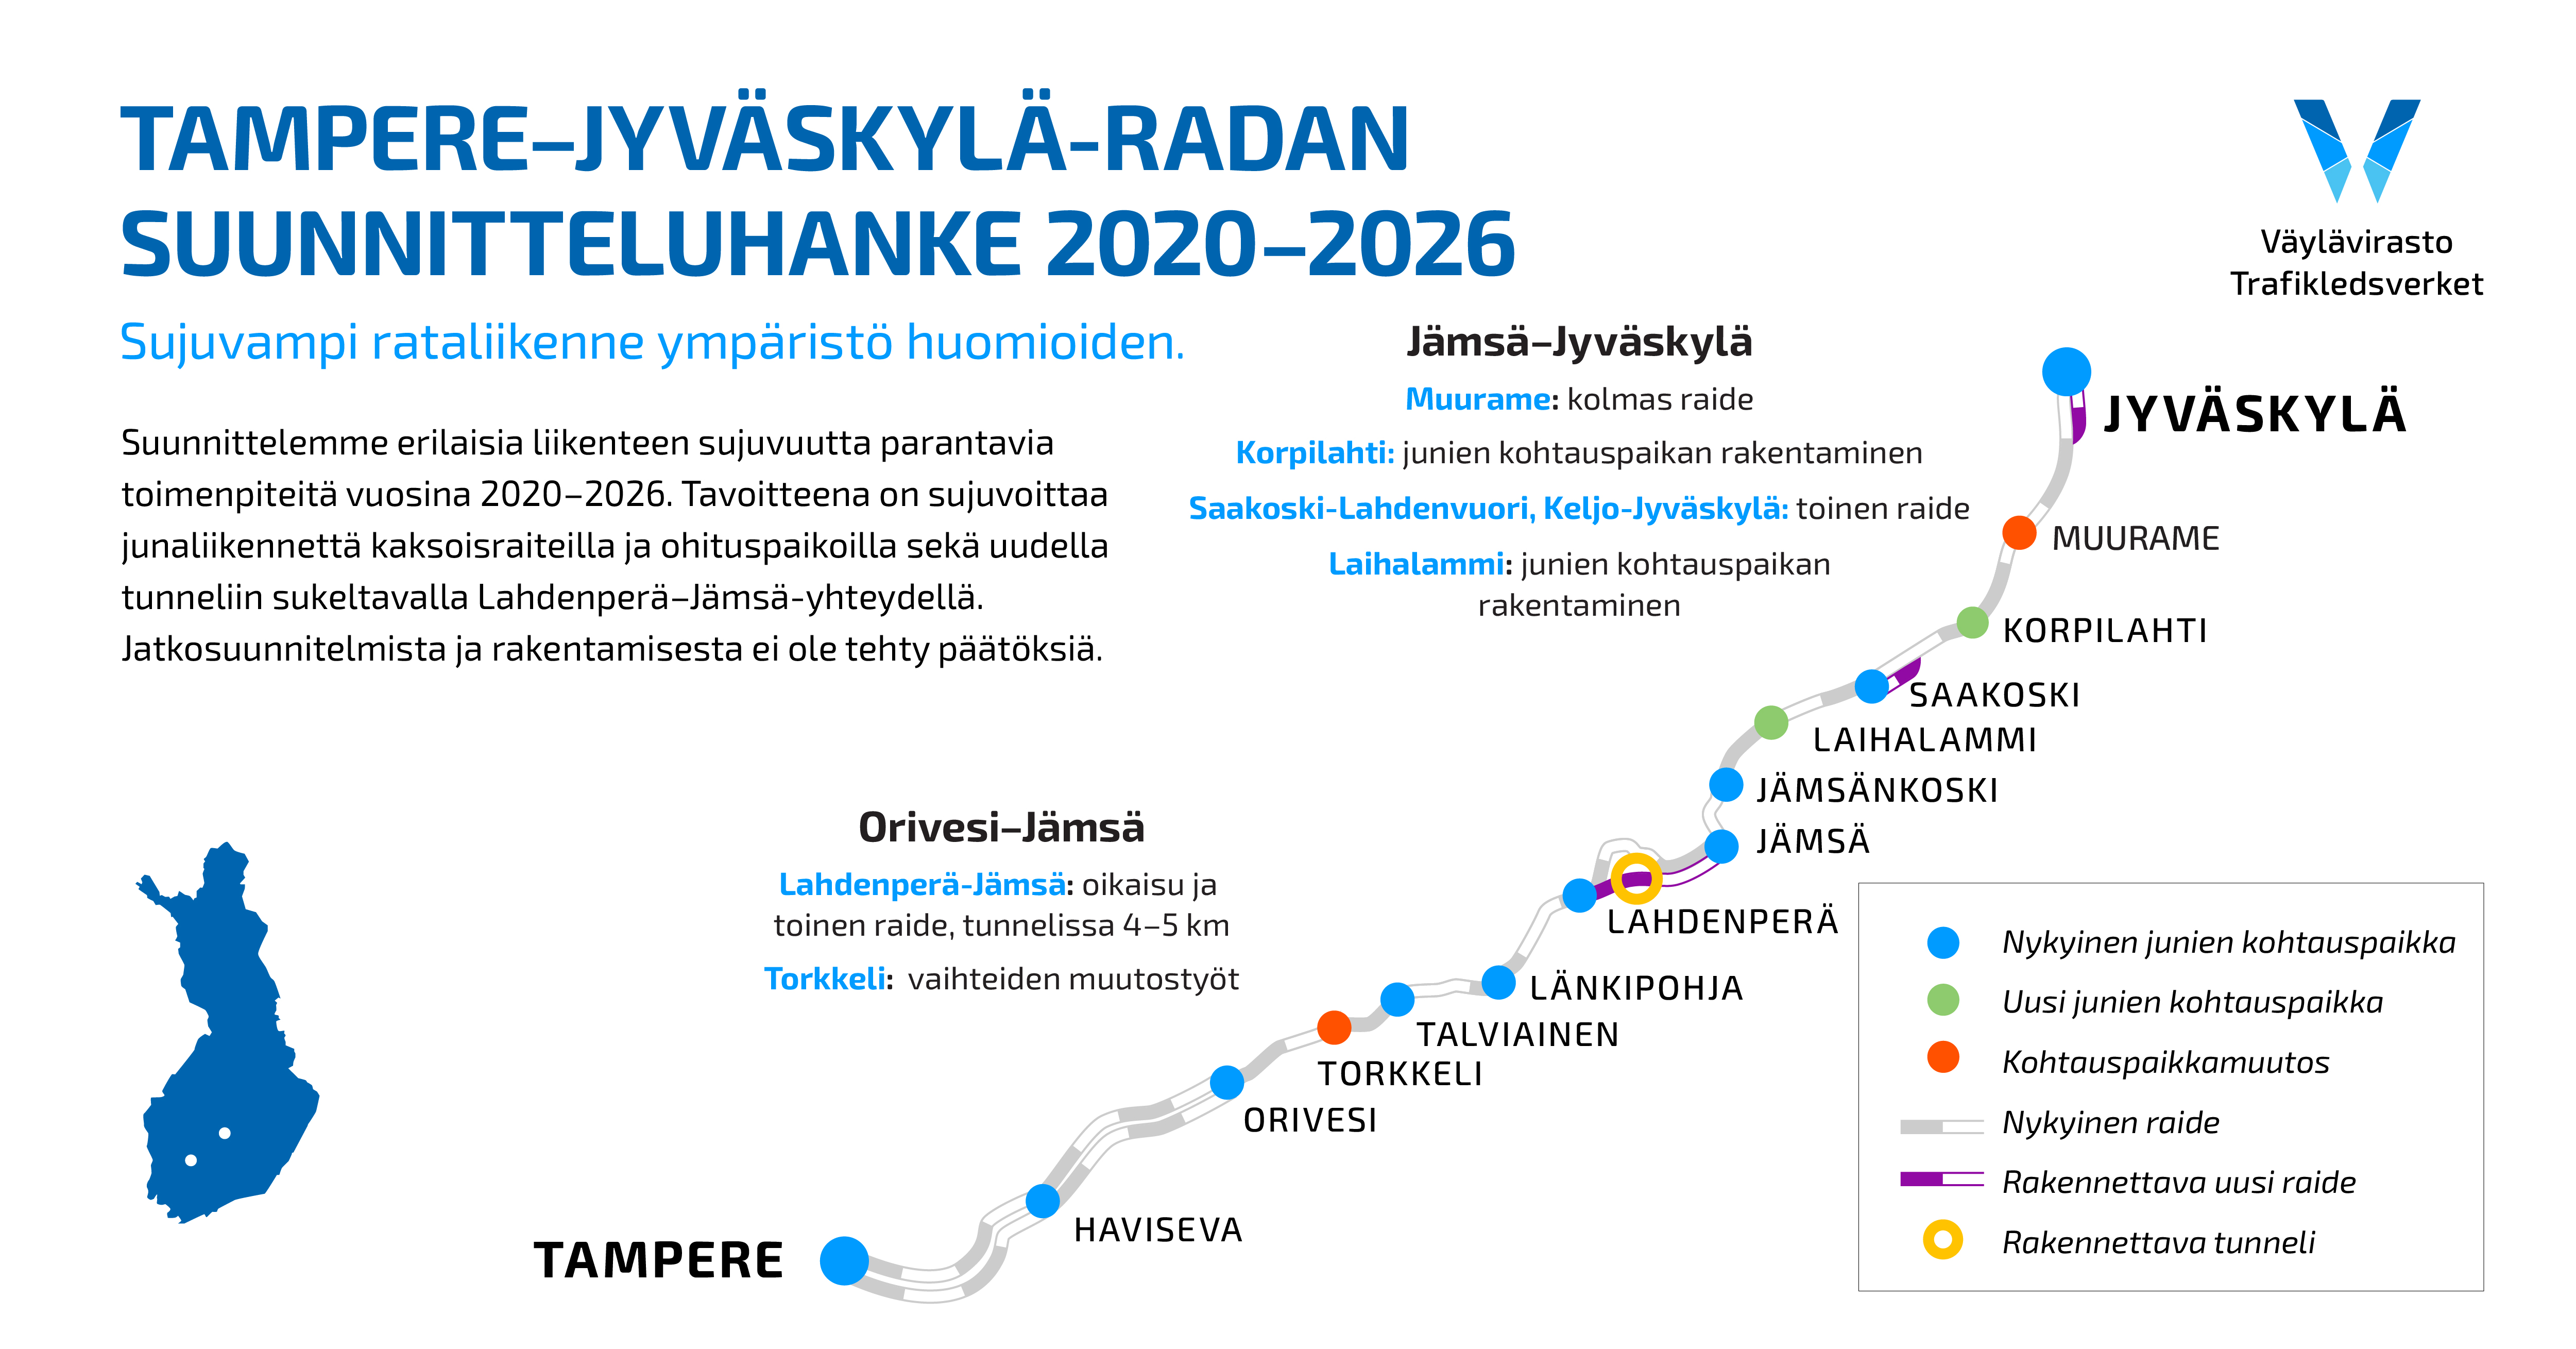 Infograafi, jossa lukee: Tampere-Jyväskylä -radan suunnitteluhanke 2020-2026, Sujuvampi rataliikenne ympäristö huomioiden, Suunnittelemme erilaisia liikenteen sujuvuutta parantavia toimenpiteitä vuosina 2020-2026. Tavoitteena on sujuvoittaa junaliikennettä kaksoisraiteilla ja ohituspaikoilla sekä uudella tunneliin sukeltavalla Lahdenperä-Jämsä-yhteydellä. Jatkosuunnitelmista ja rakentamisesta ei ole tehty päätöksiä. Lahdenperä-Jämsä: oikaisu ja toinen raide, tunnelissa 4-5 km. Torkkeli: vaihteiden muutostyöt. Jämsä-Jyväskylä -välillä. Muurame: kolmas raide. Korpilahti: junien kohtauspaikan rakentaminen. Saakoski-Lahdenvuori, Keljo-Jyväskylä: toinen raide. Laihalammi: junien kohtauspaikan rakentaminen.